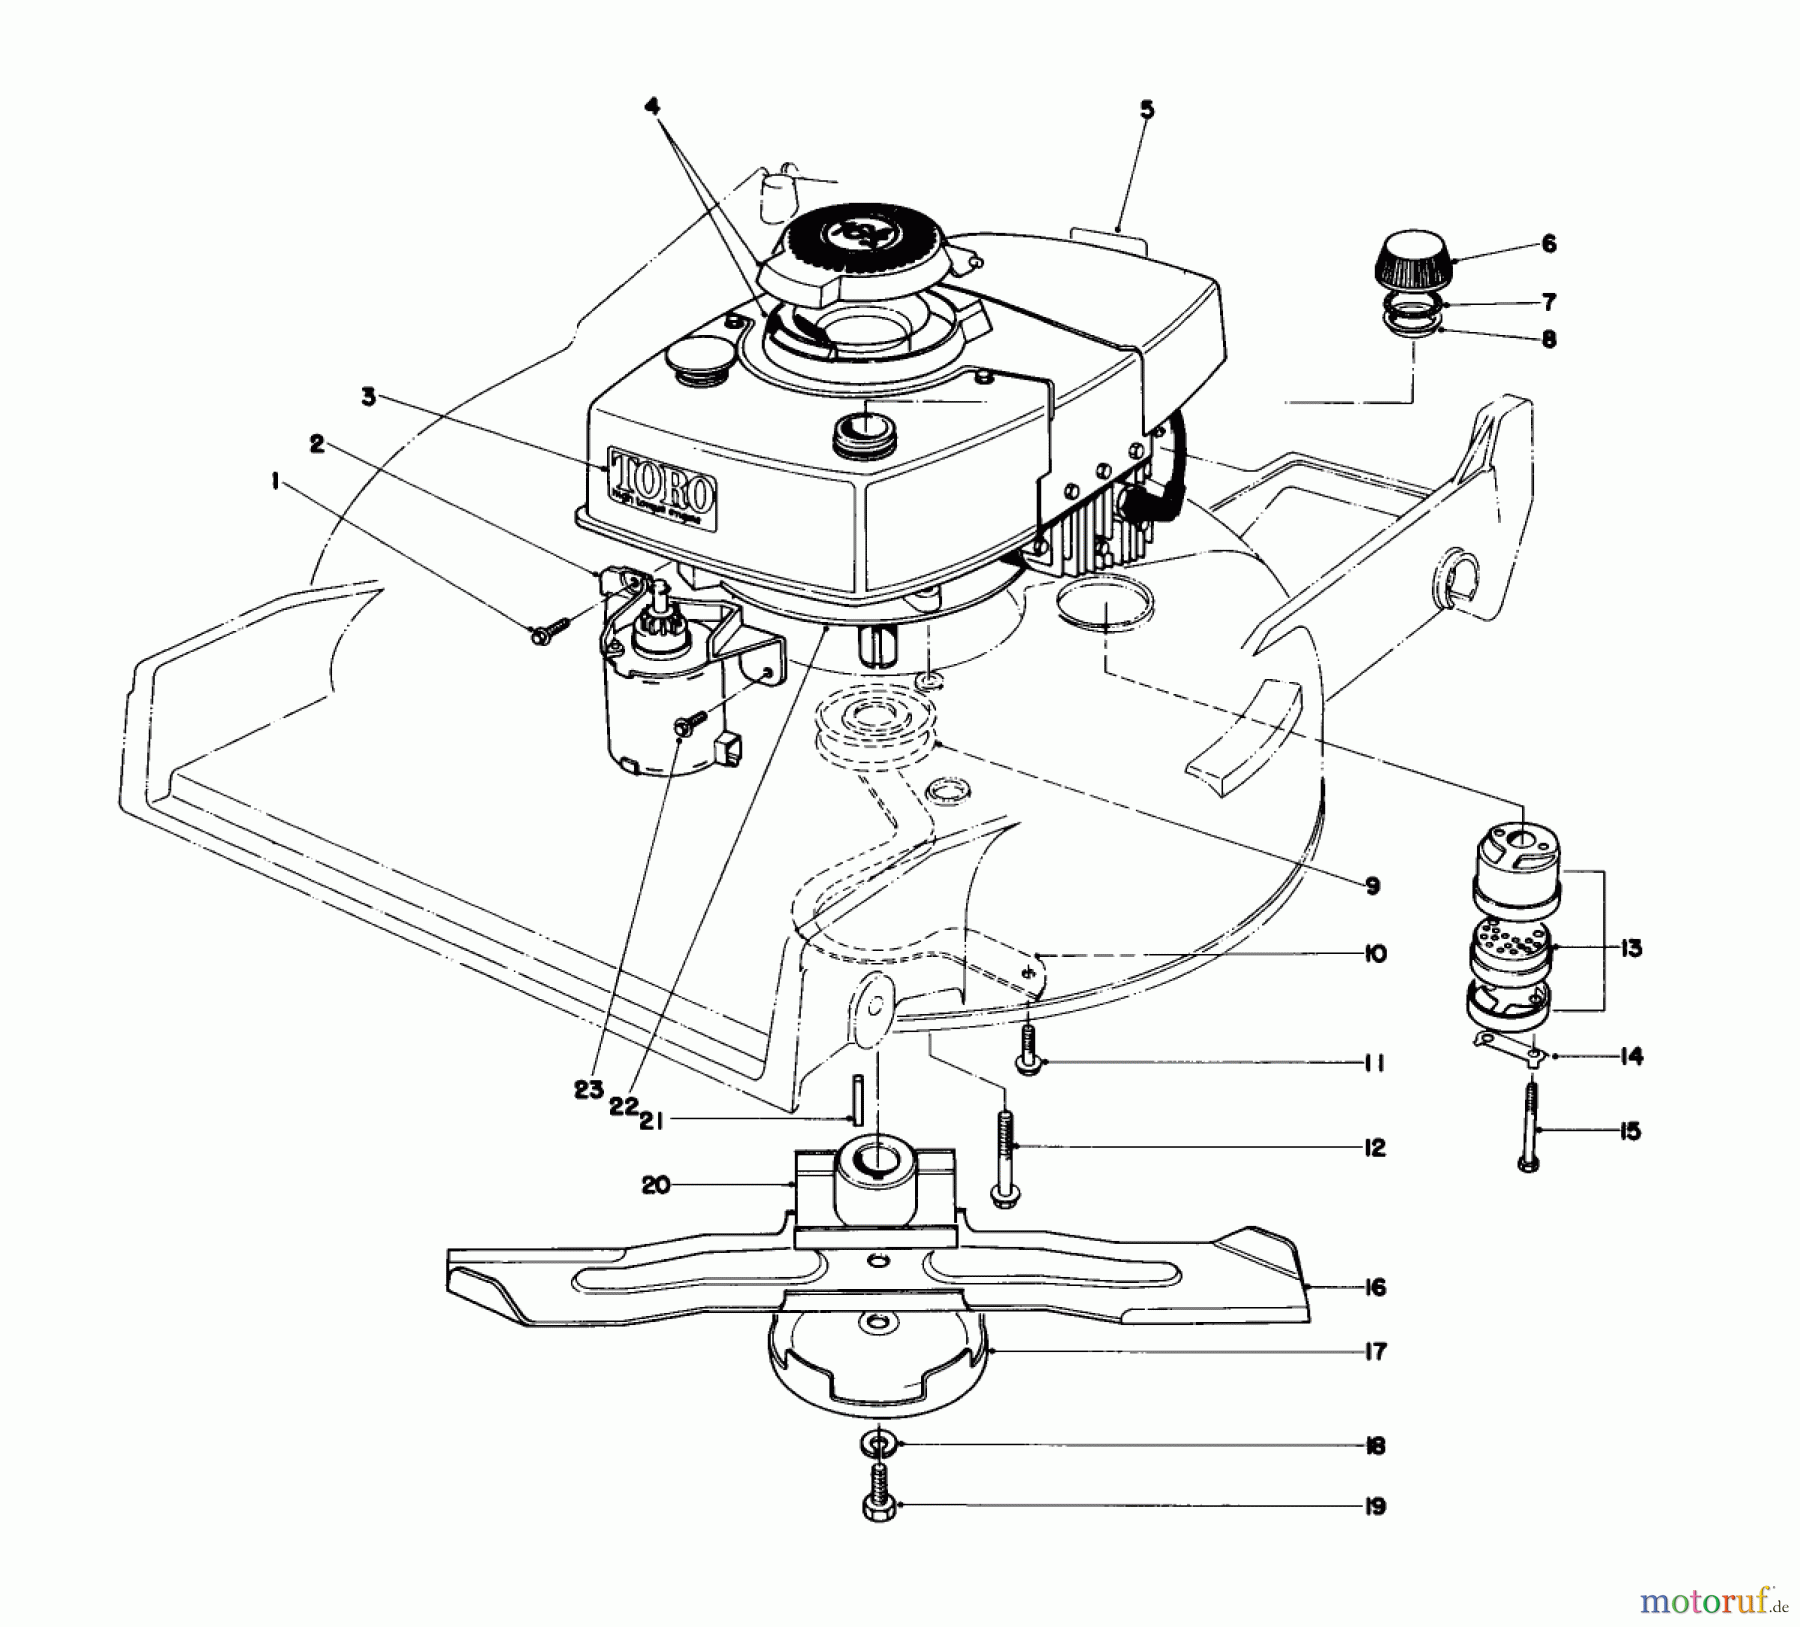  Toro Neu Mowers, Walk-Behind Seite 1 20715 - Toro Lawnmower, 1979 (9000001-9999999) ENGINE ASSEMBLY